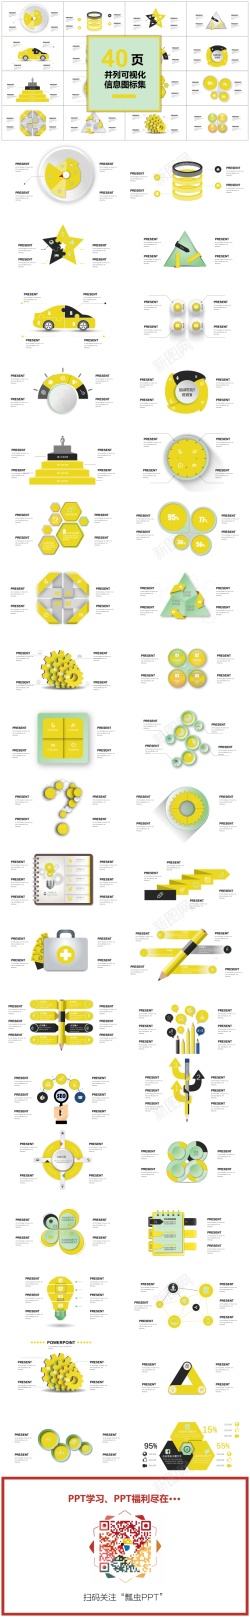 图表图片素材00140页黄色并列可视化图表集PPT模板